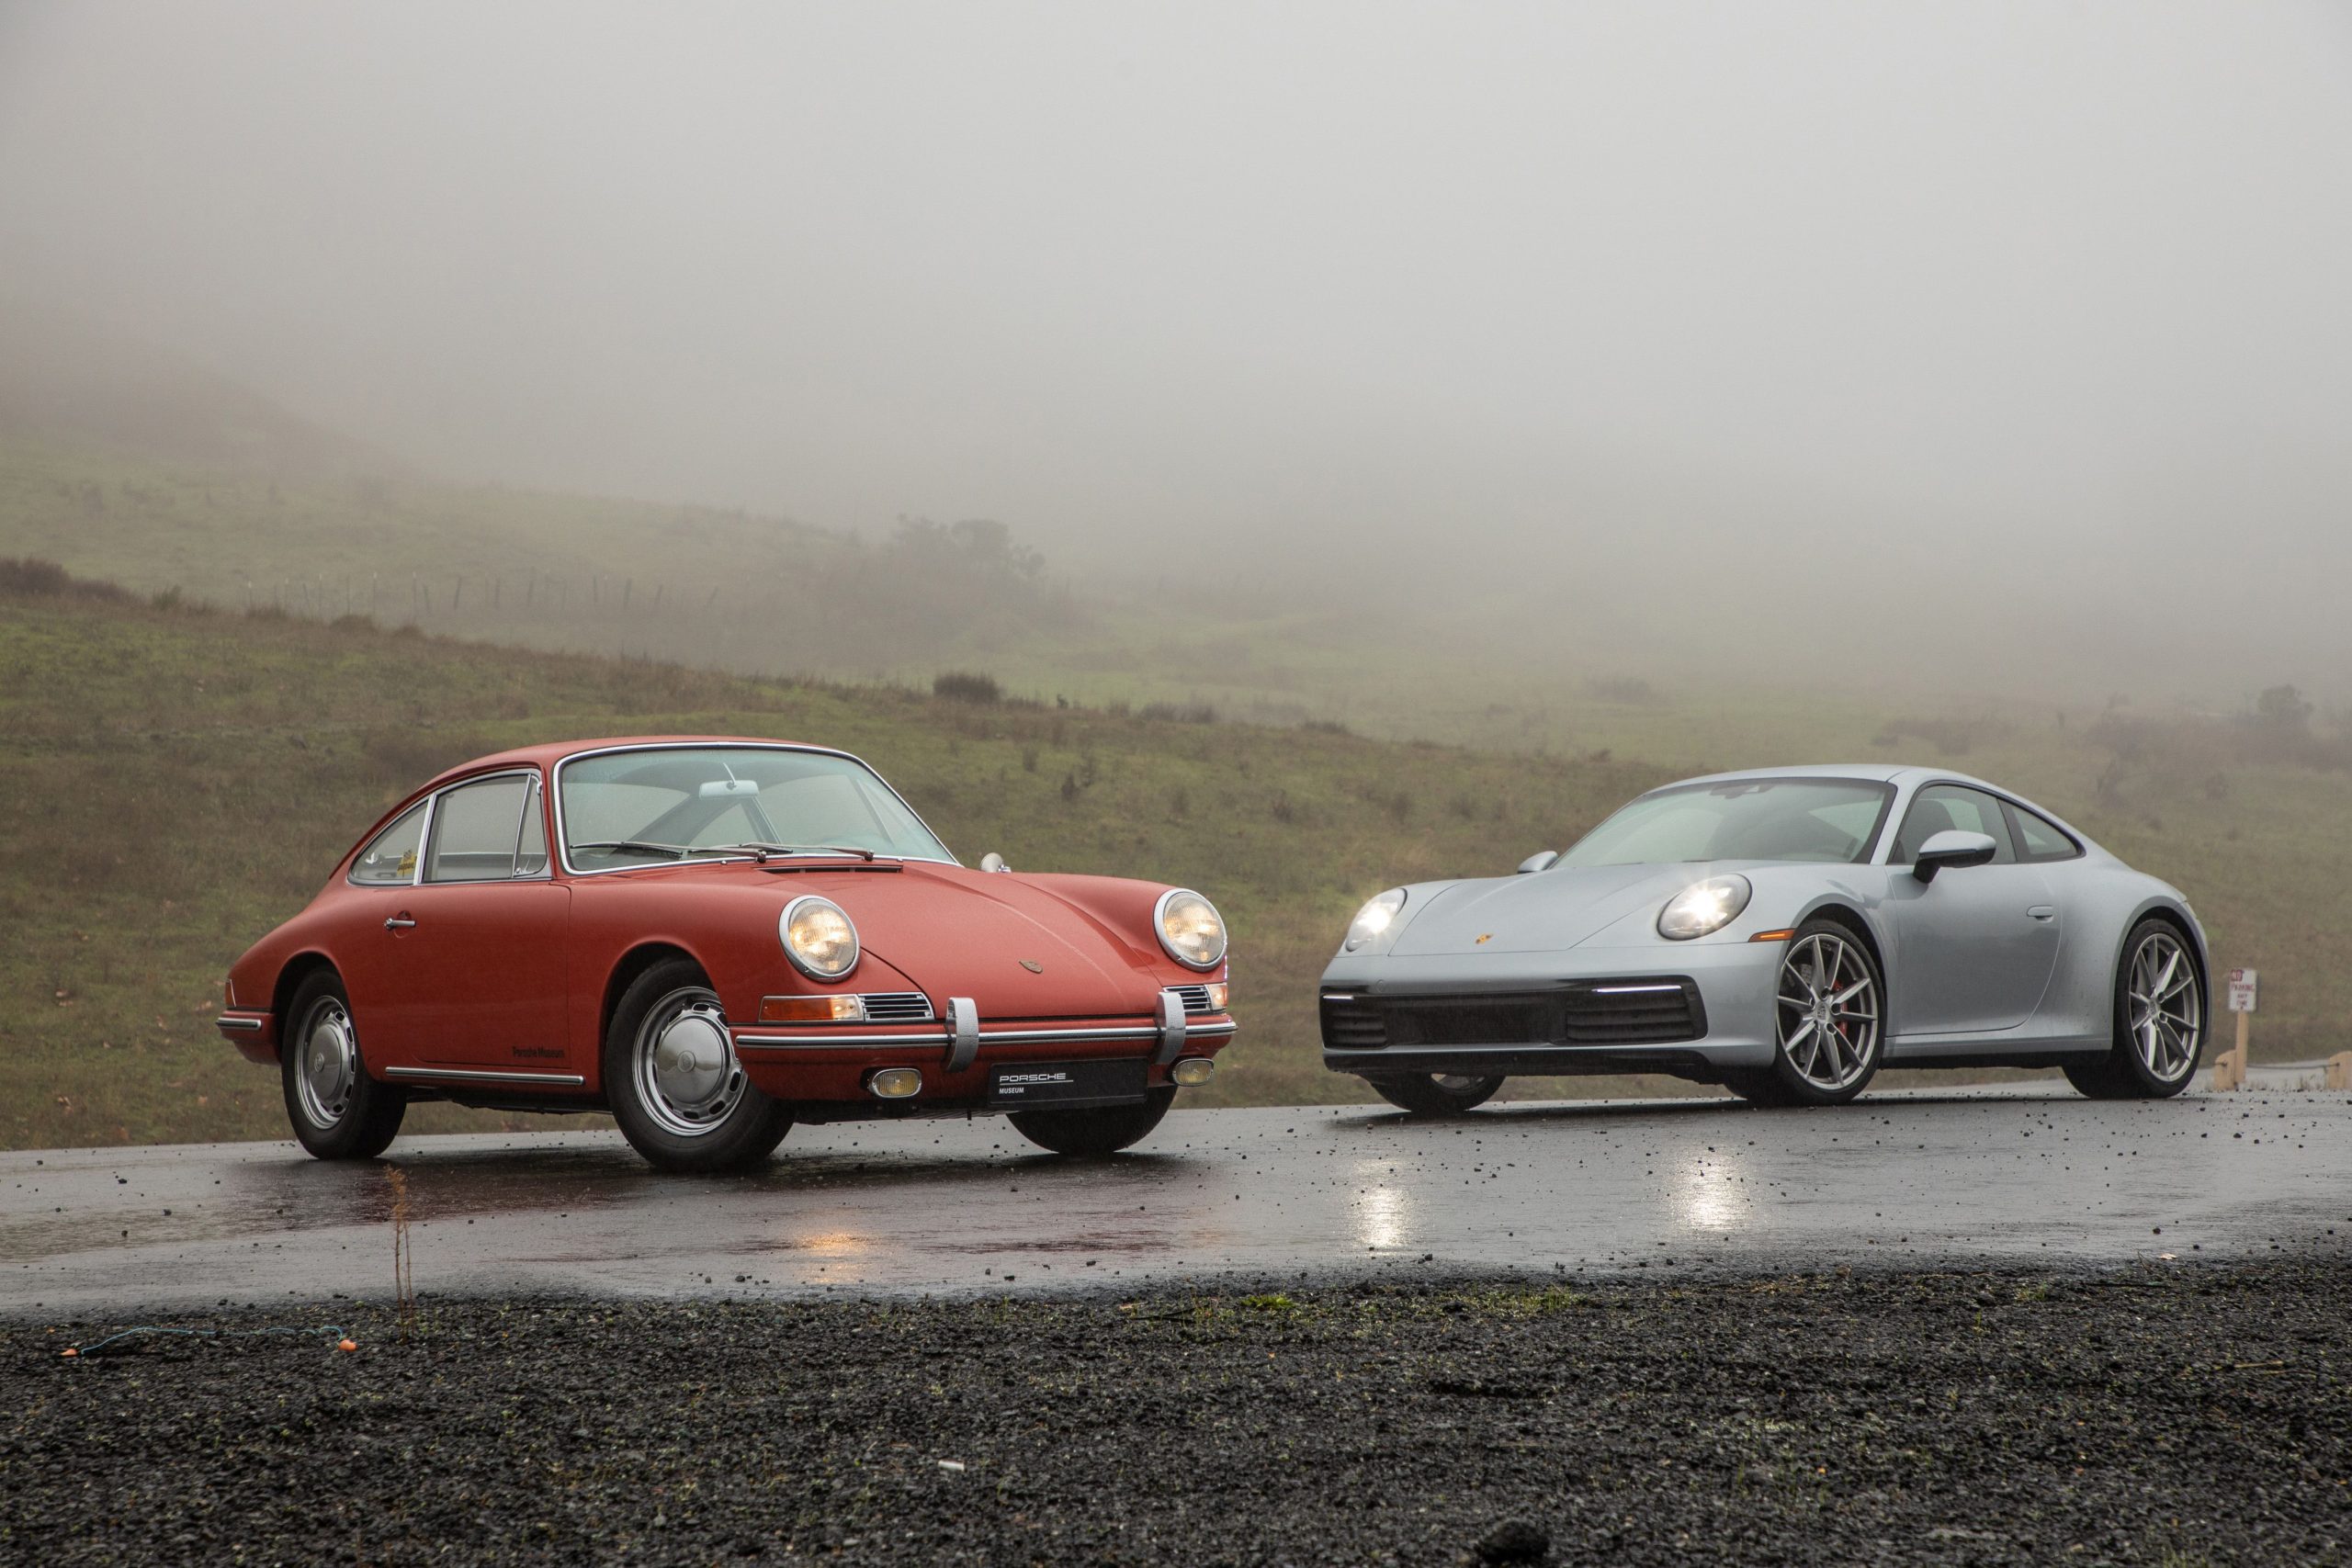 image inclinée de face montrant une Porsche 901 rouge de 1964 et une Porsche 911 2020